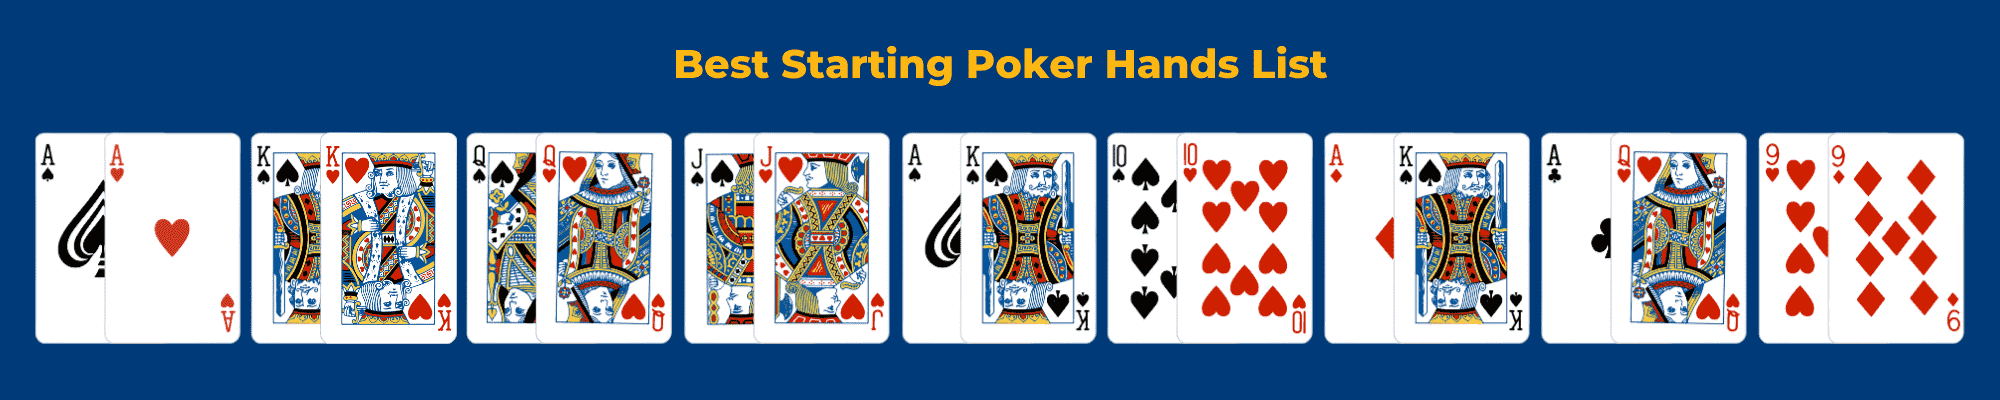 Top 10 Best Starting Poker Hands List